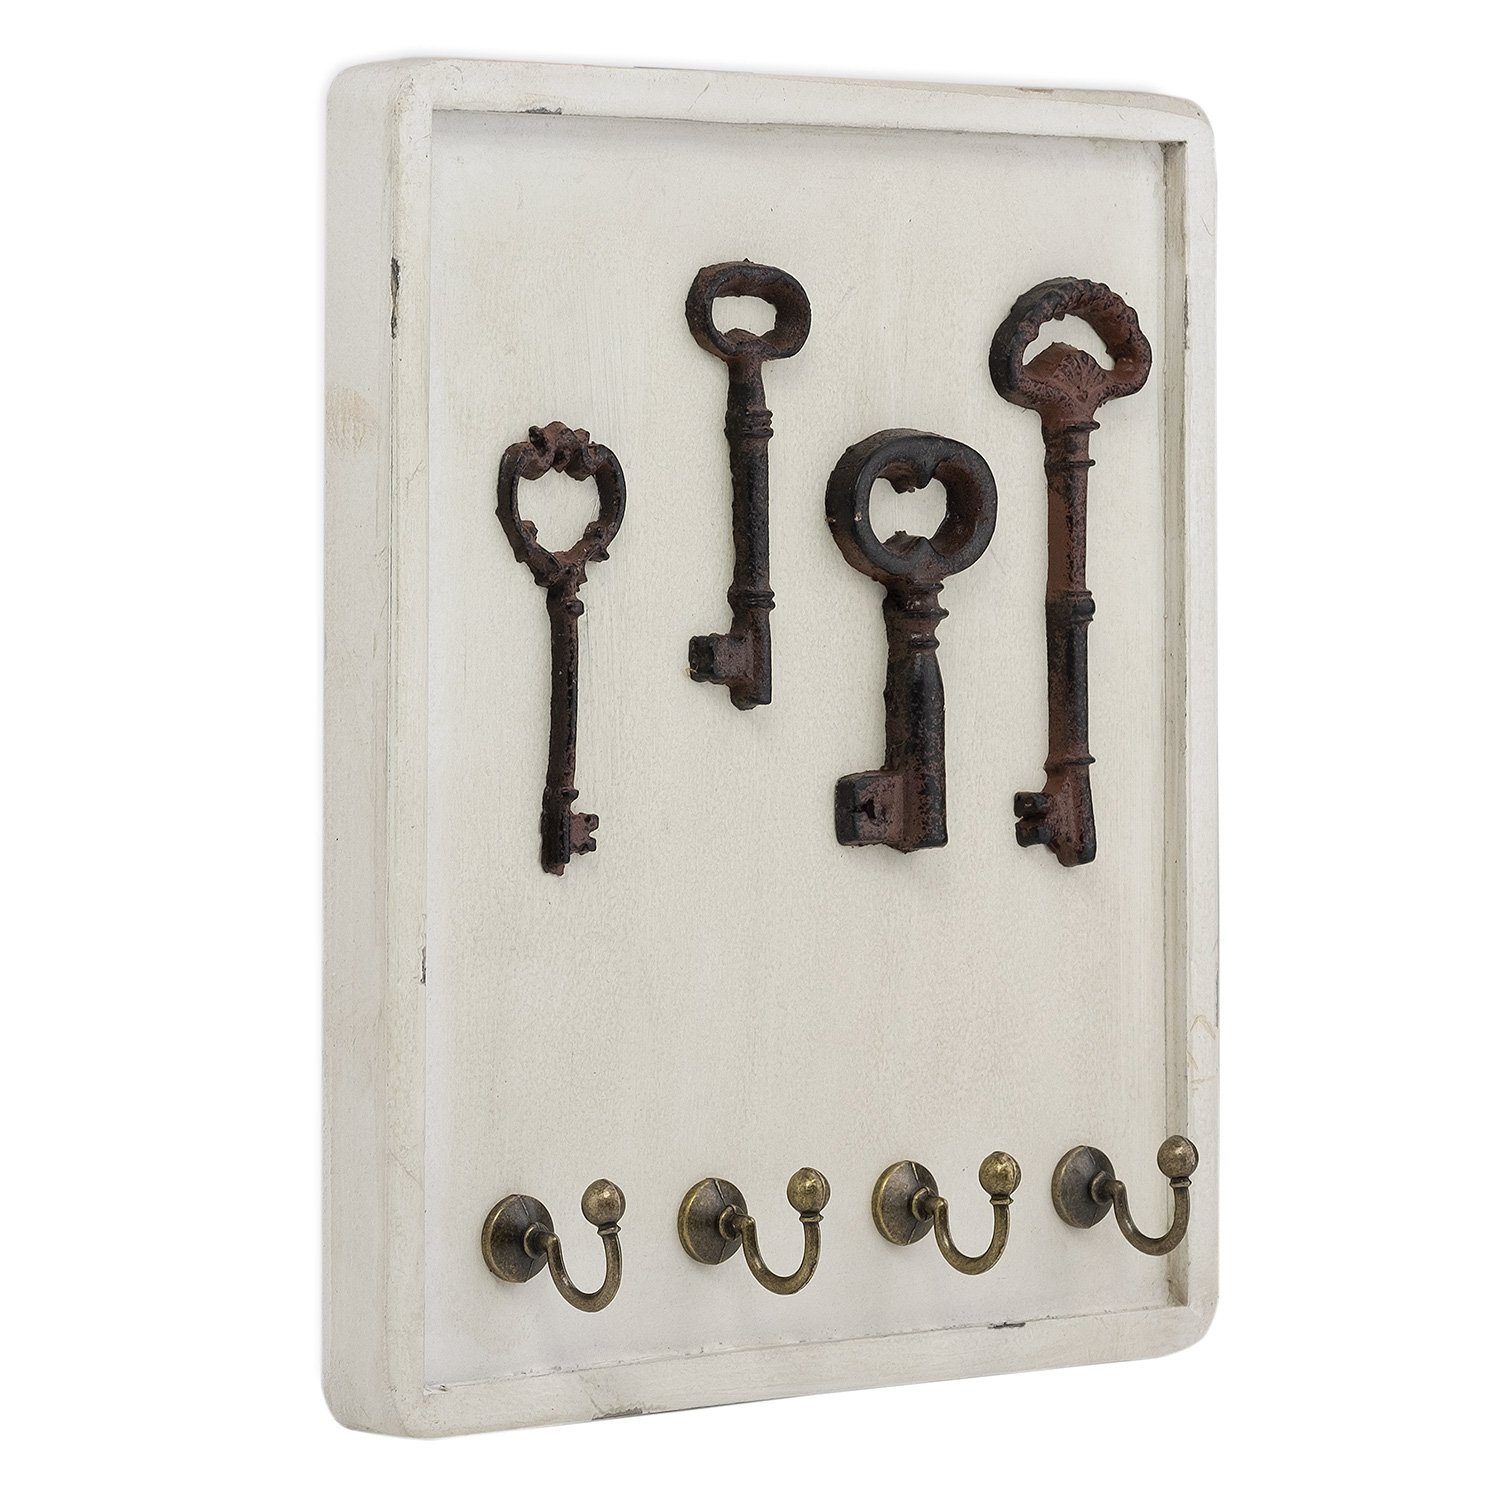 Moritz Schlüsselbrett 22x25cm Antike Schlüssel 4 Haken weiß,  Schlüsselkasten Vintage Schlüsselbox Schlüsselleiste Schlüsselhaken